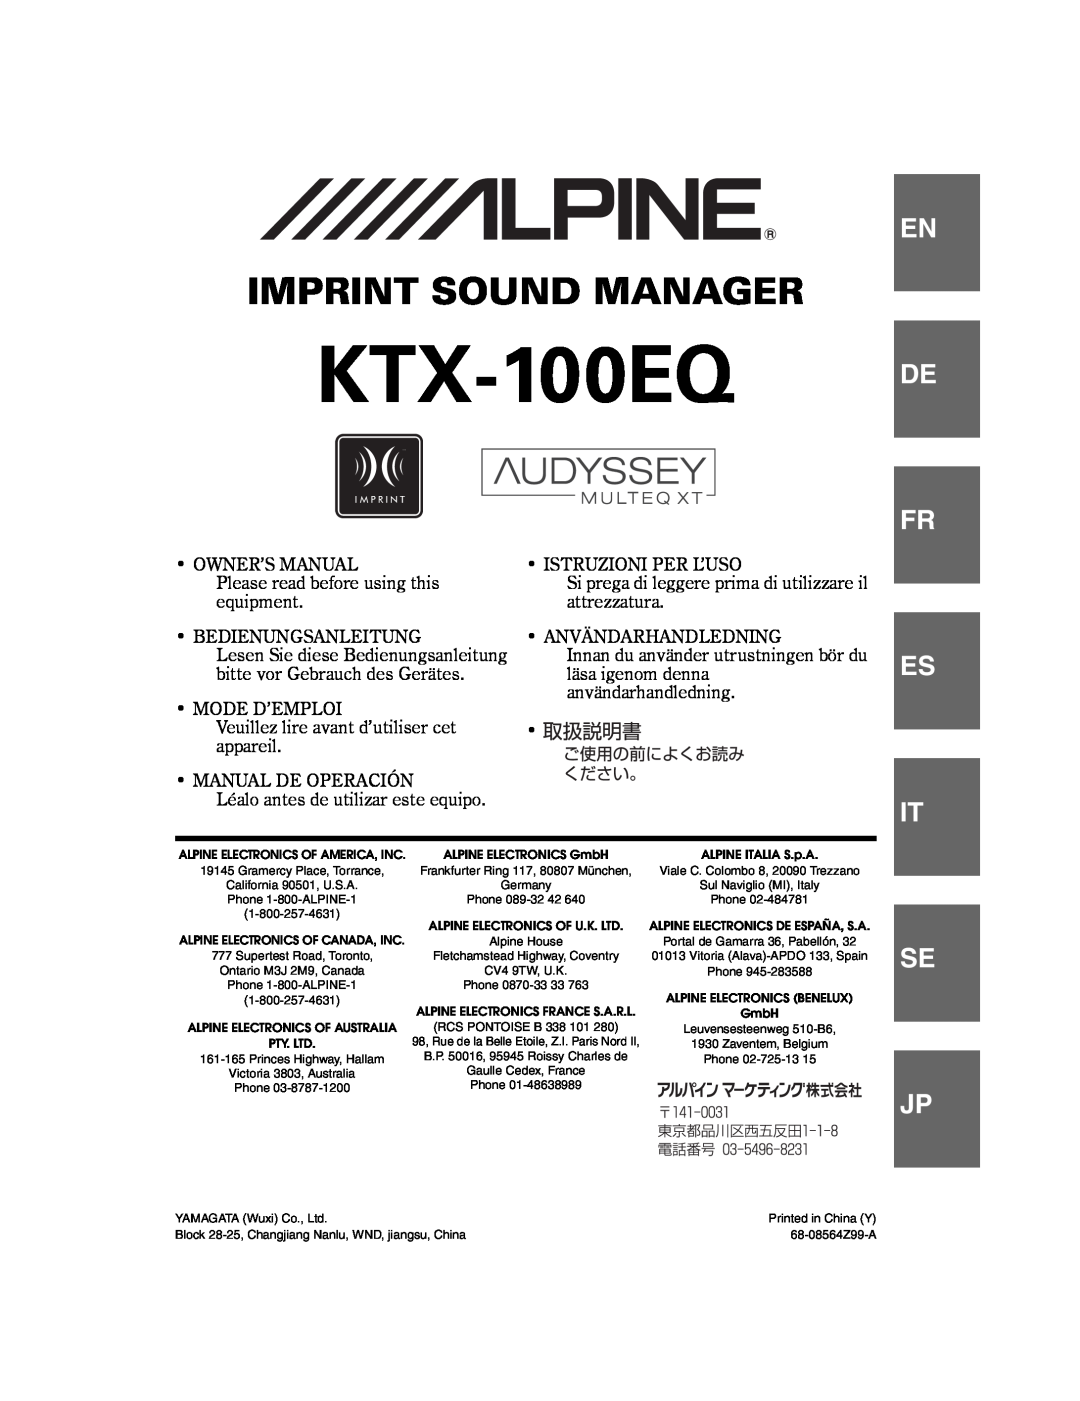 Alpine KTX-100EQ owner manual Imprint Sound Manager, De Fr, Es It, Se Jp 